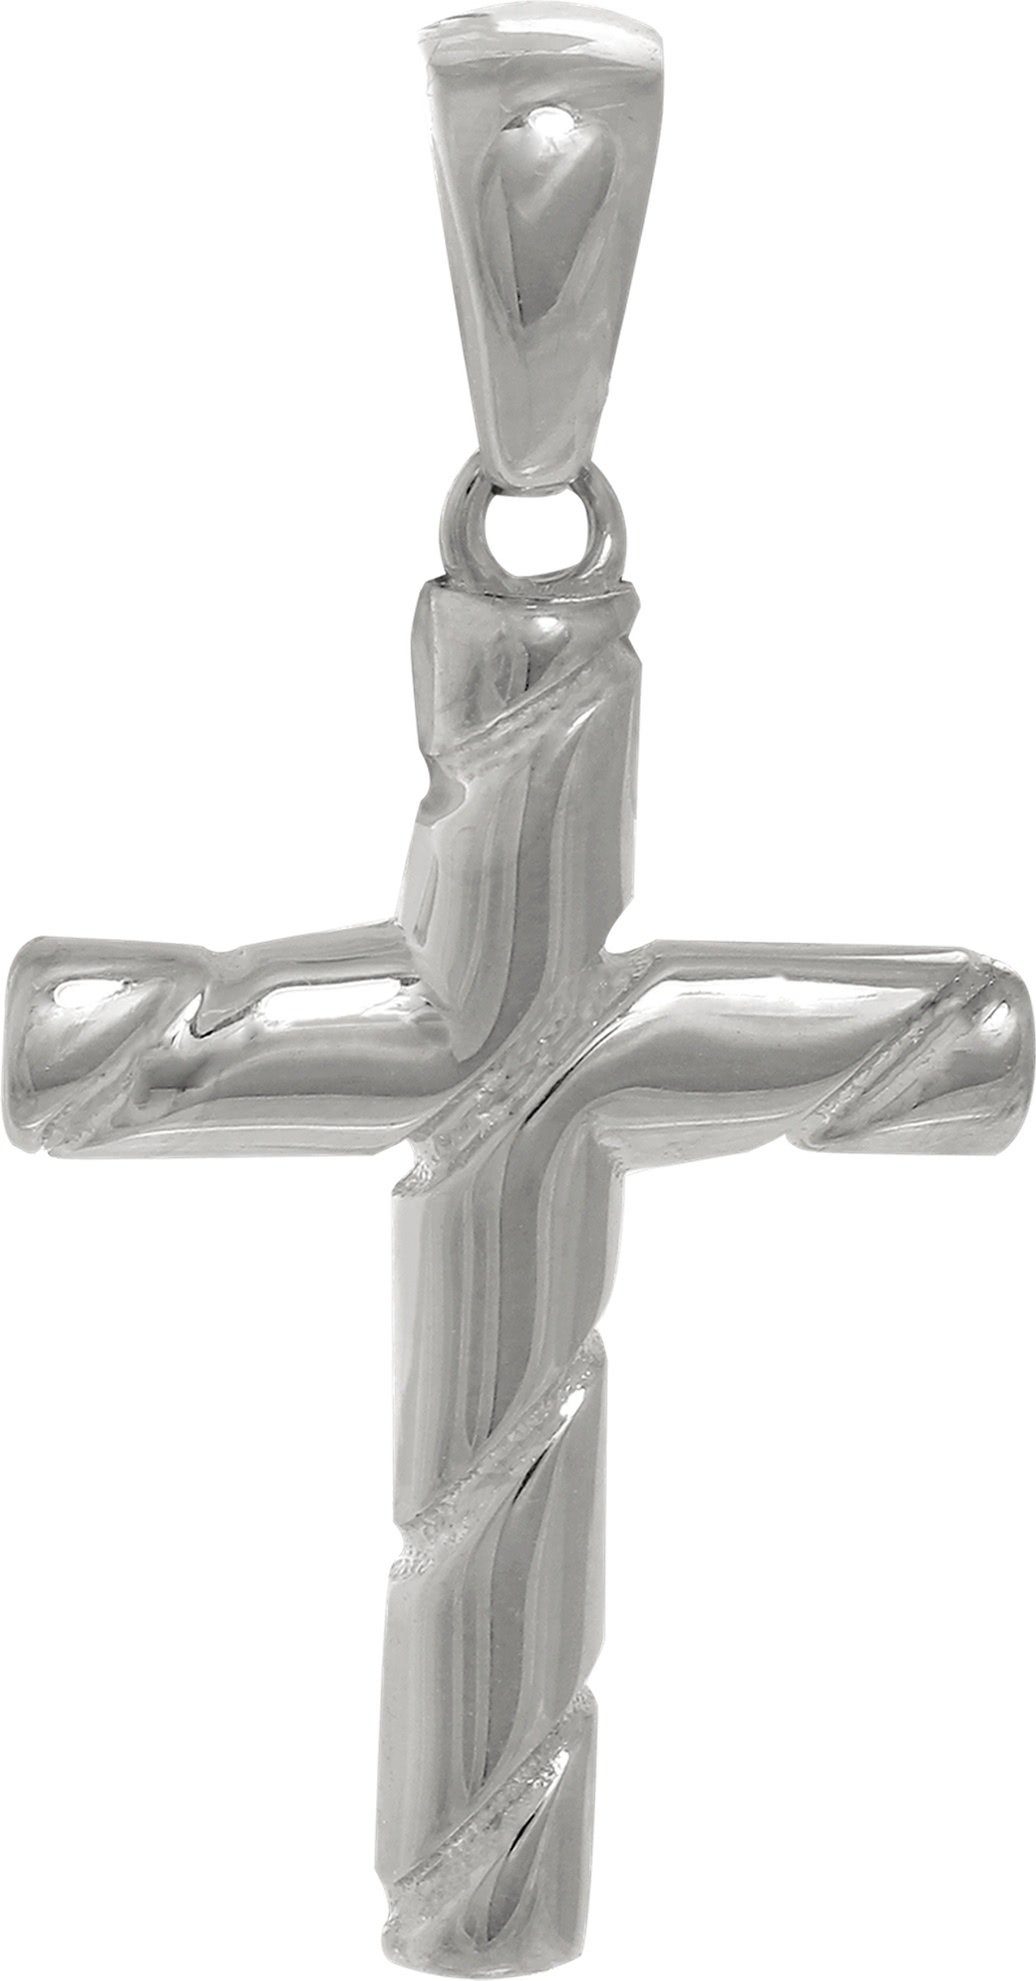 SilberDream Kettenanhänger SilberDream Ketten Anhänger -Kreuz-, Kreuzanhänger 925 Sterling Silber, silber